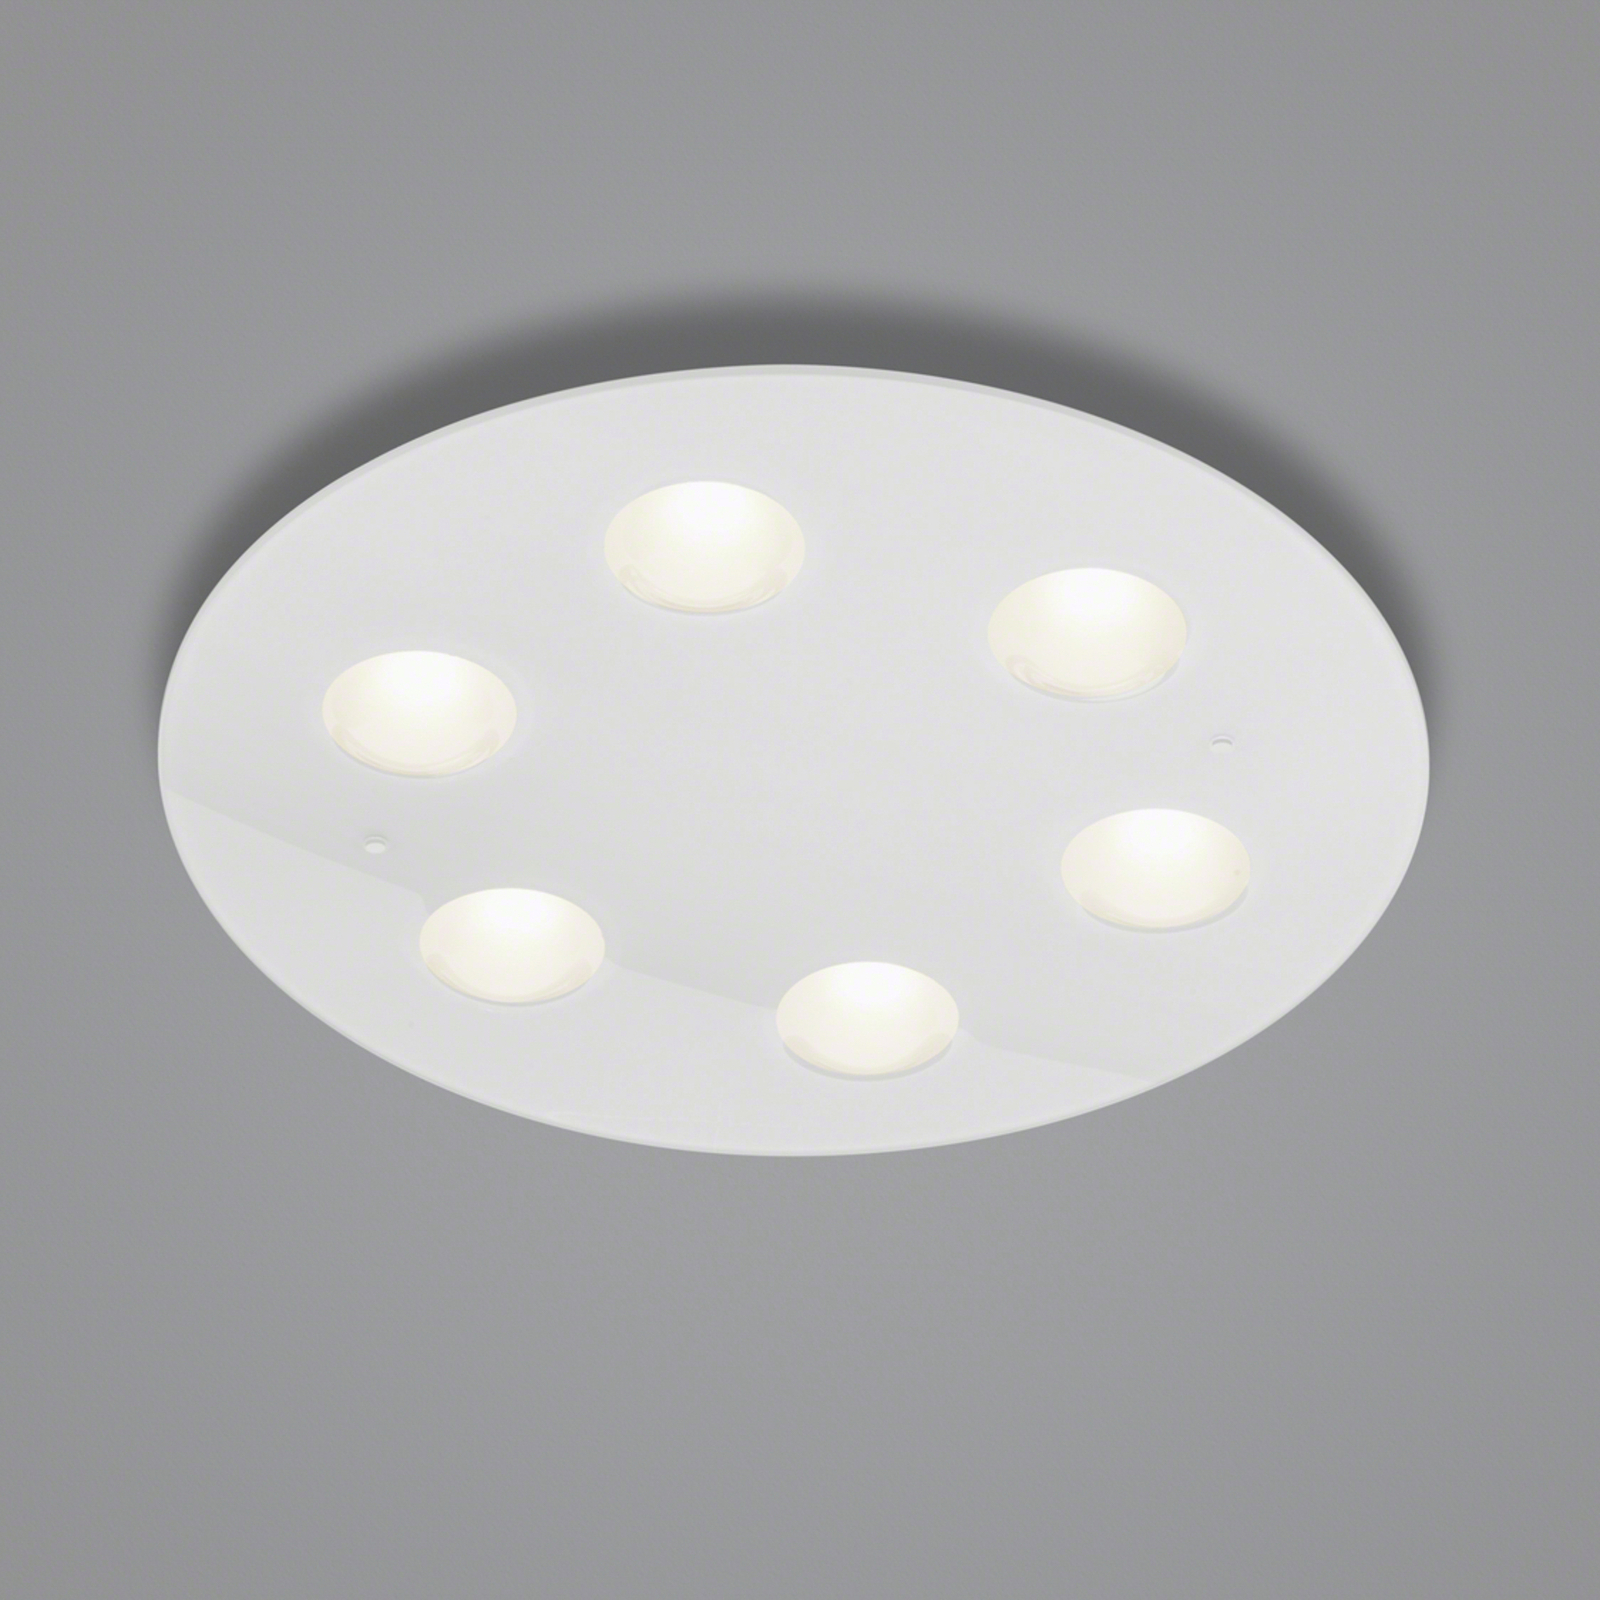 Helestra Nomi LED plafondlamp Ø49cm dim wit